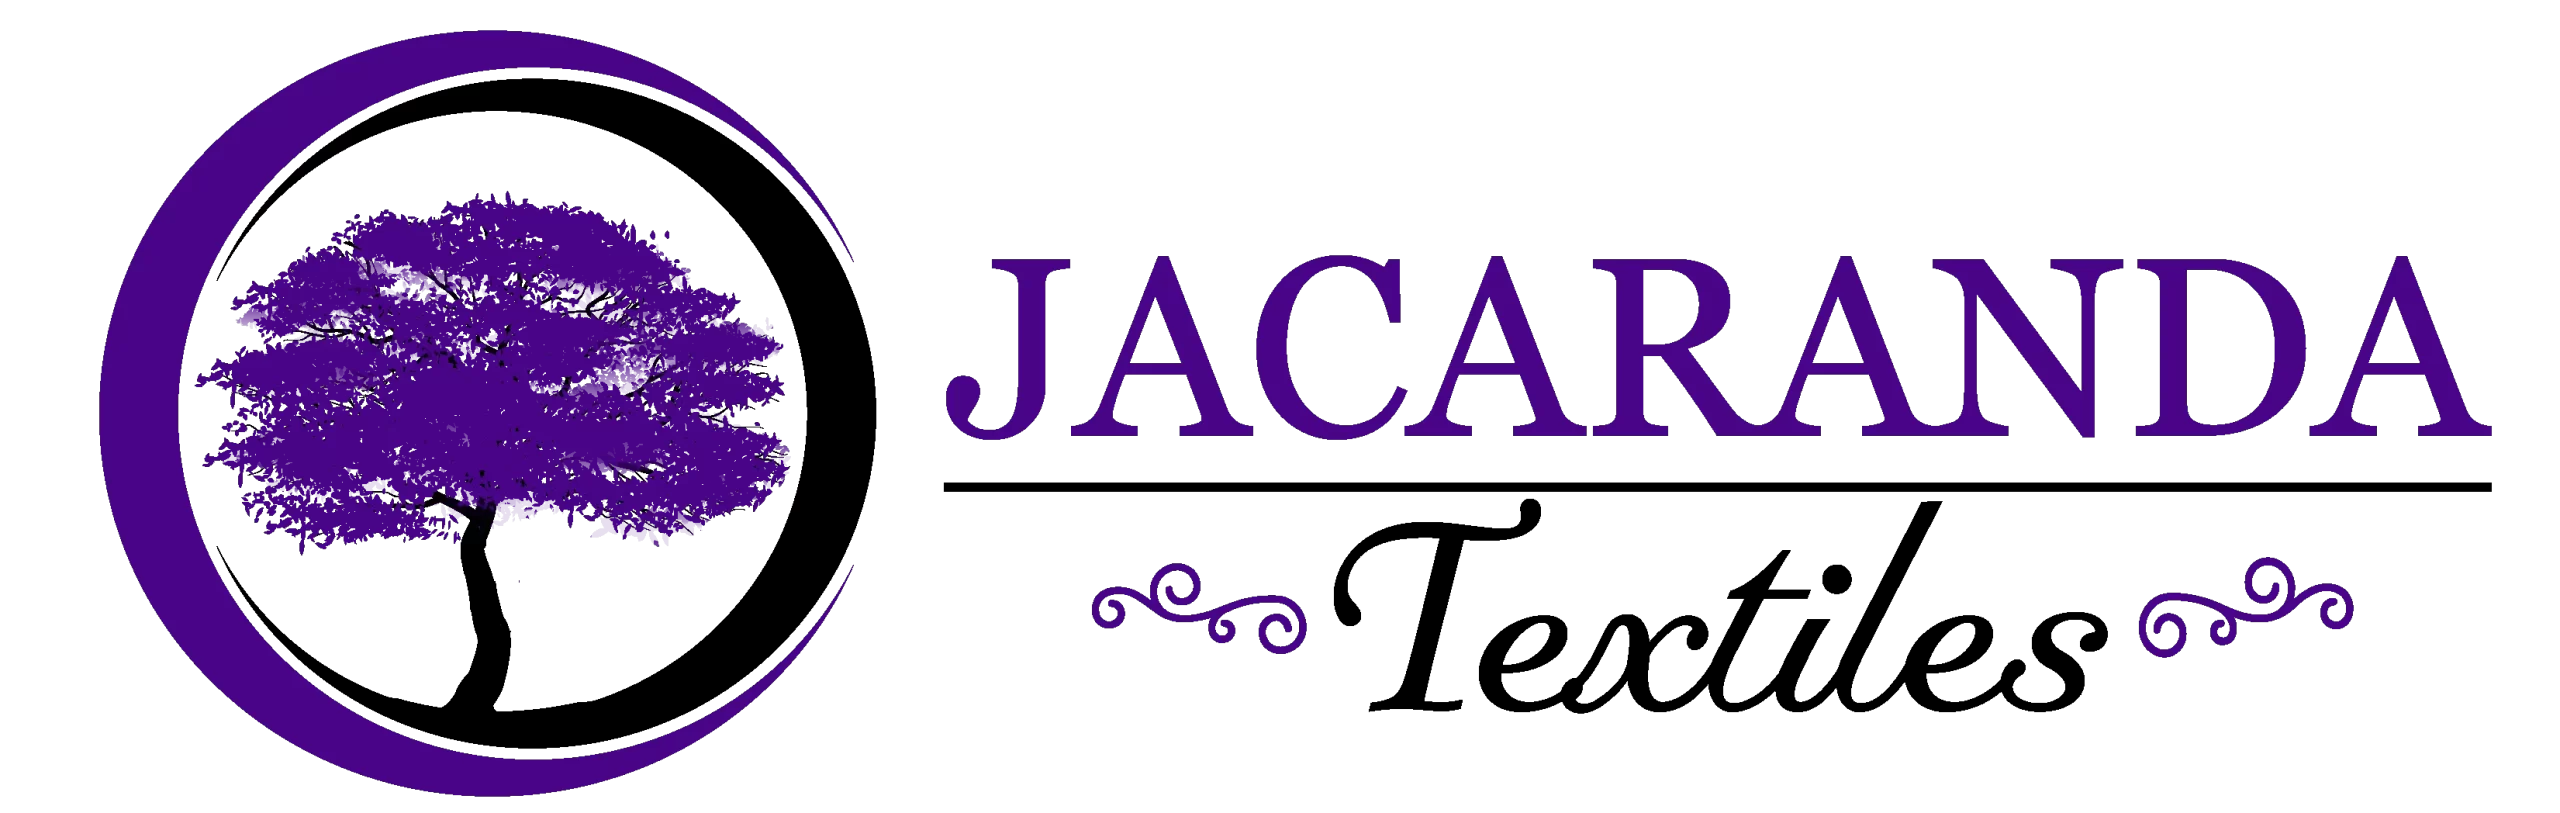 jacaranda-textiles-logo